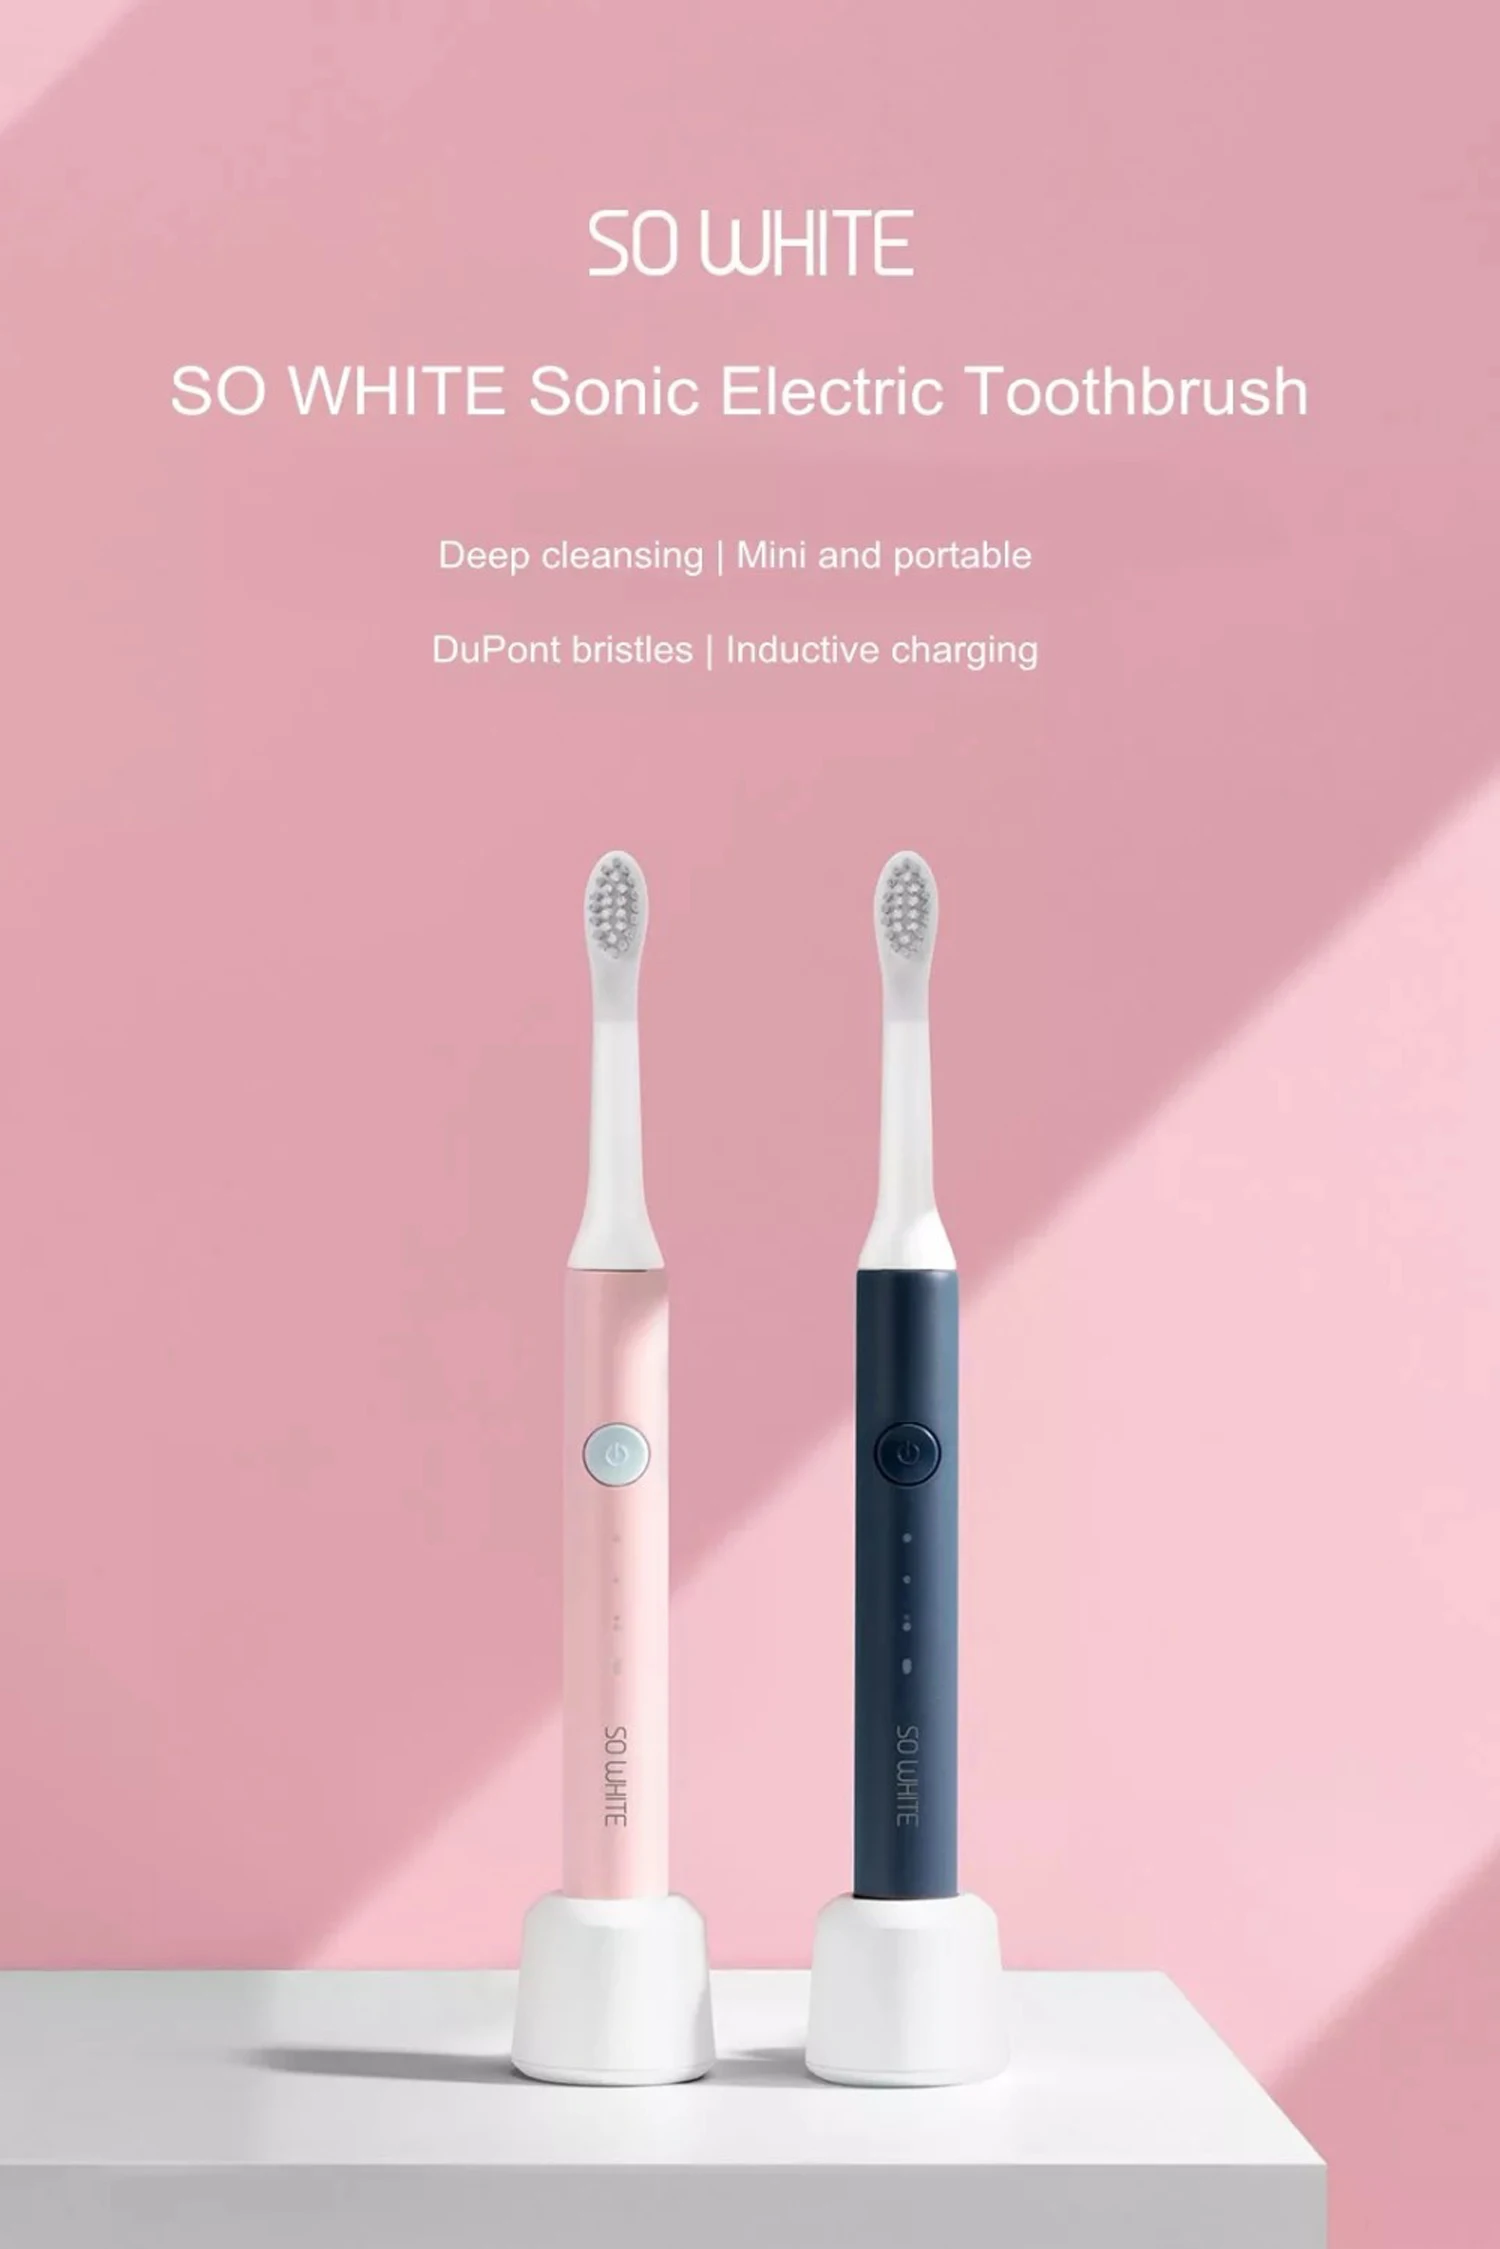 Оригинальная XIAOMI Mijia Youpin Soocas SO WHITE звуковая электрическая зубная щетка Беспроводная Индукционная зарядка IPX7 Водонепроницаемая зубная щетка